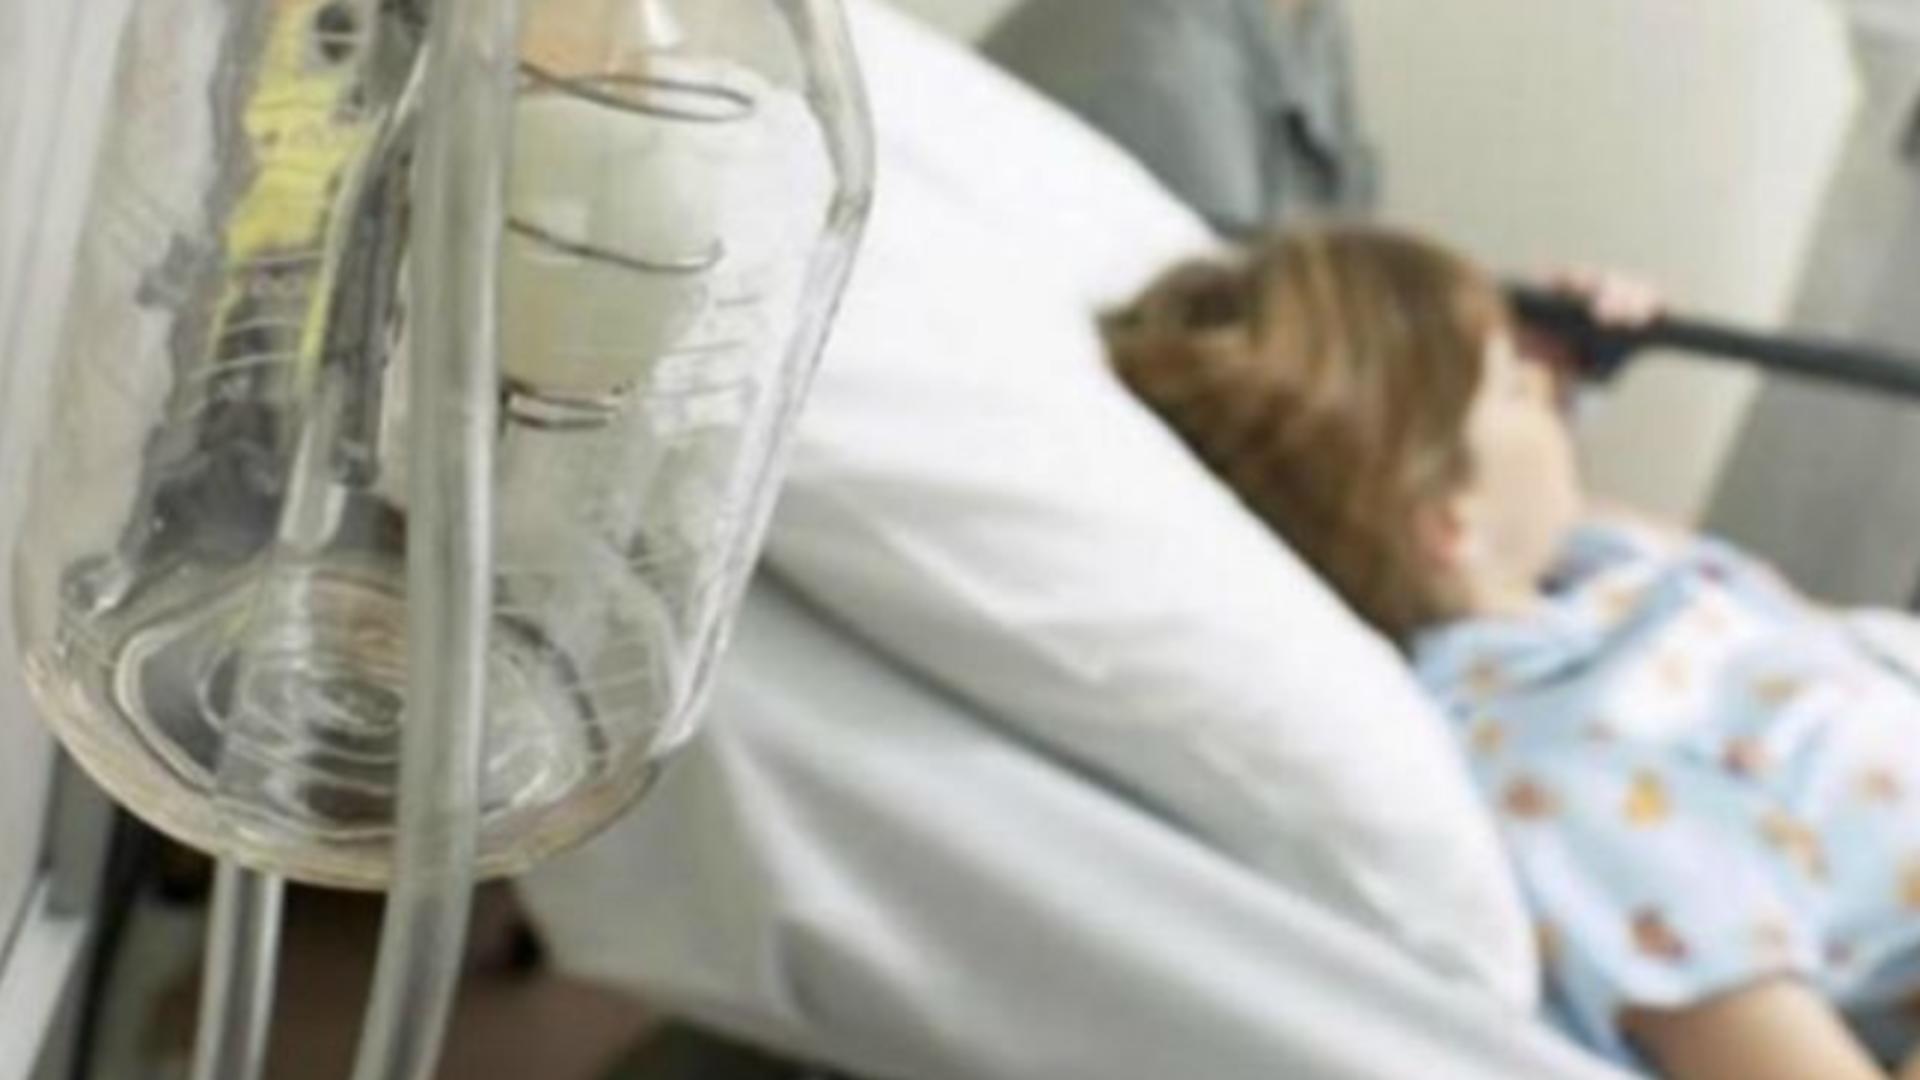 Urgență sanitară în Bistrița-Năsăud: 14 persoane, dintre care 10 copii, au ajuns la spital cu toxiinfecție alimentară